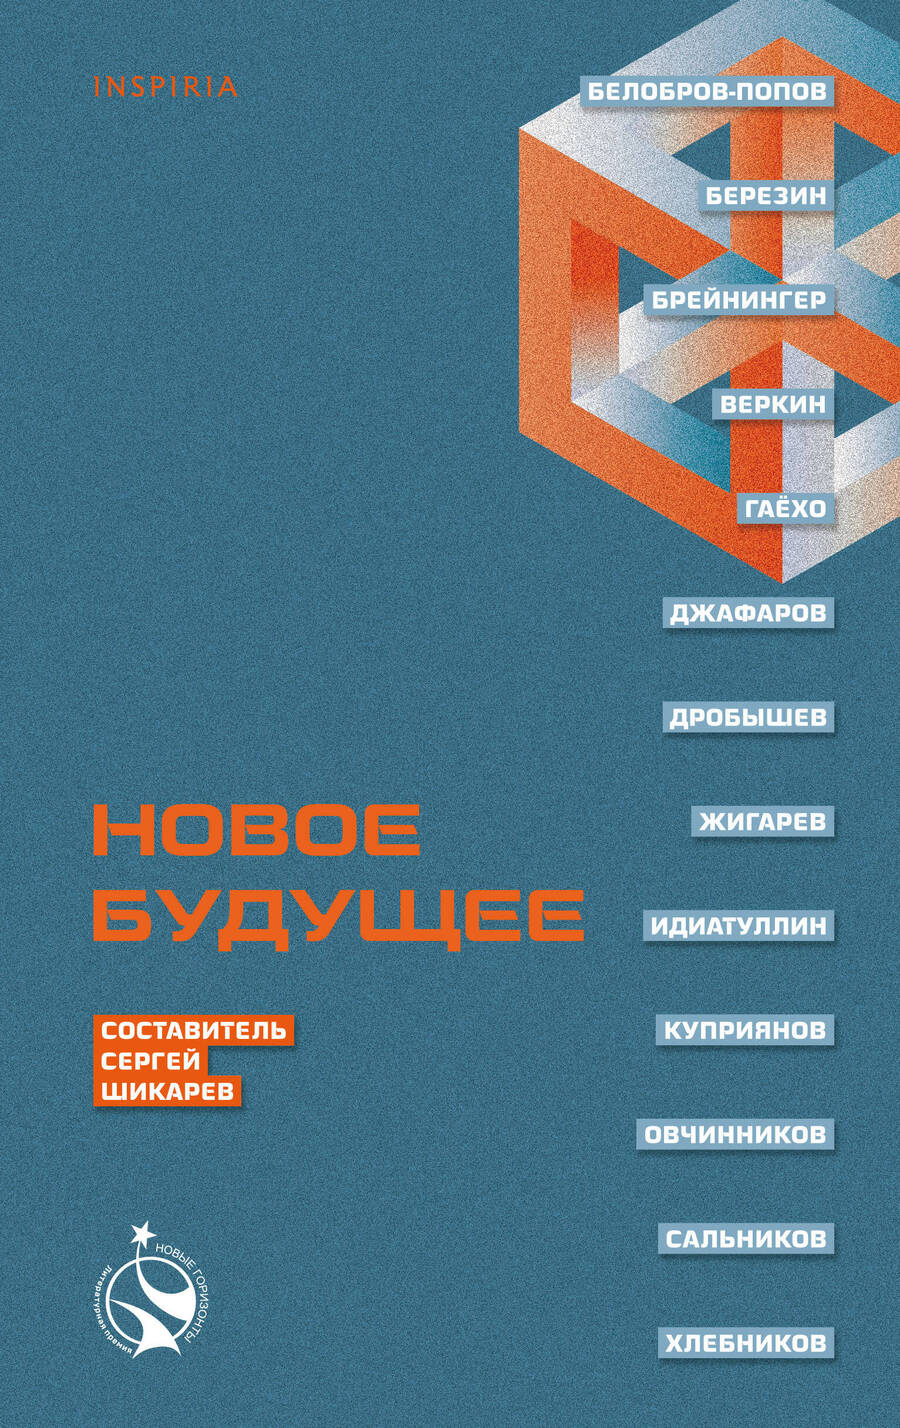 Обложка книги "Шикарев, Веркин, Брейнингер: Новое Будущее"